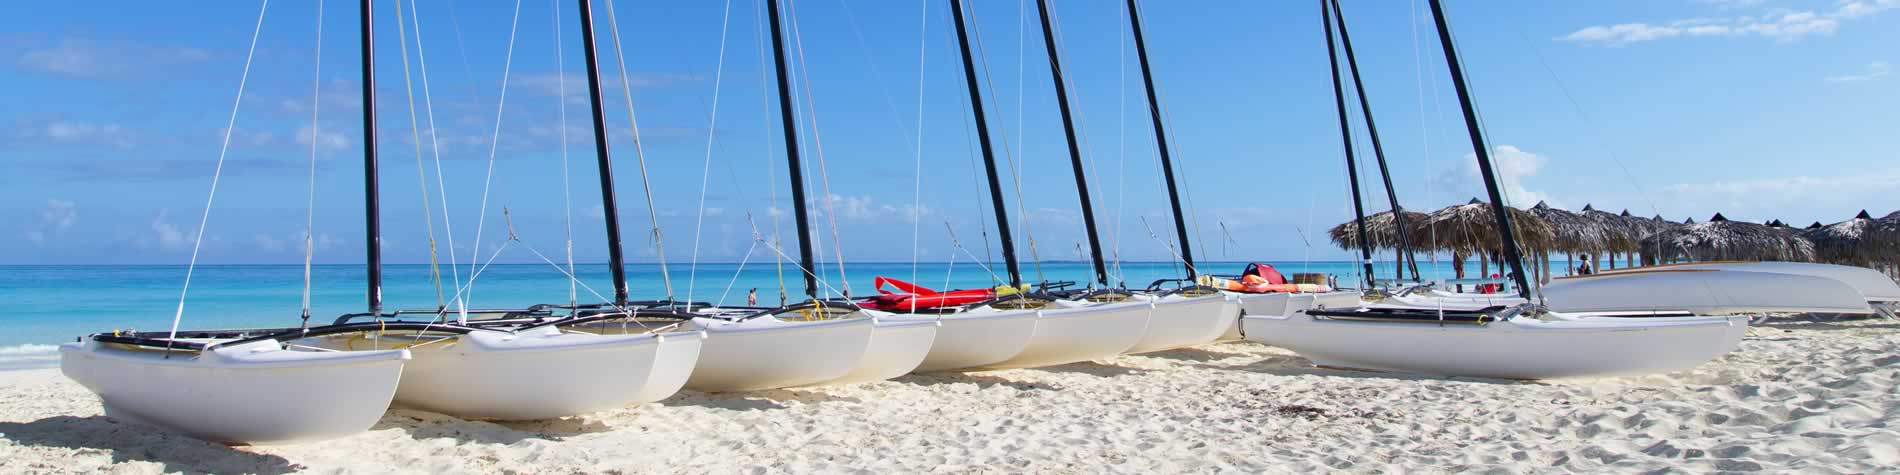 Catamarans on the beach sand